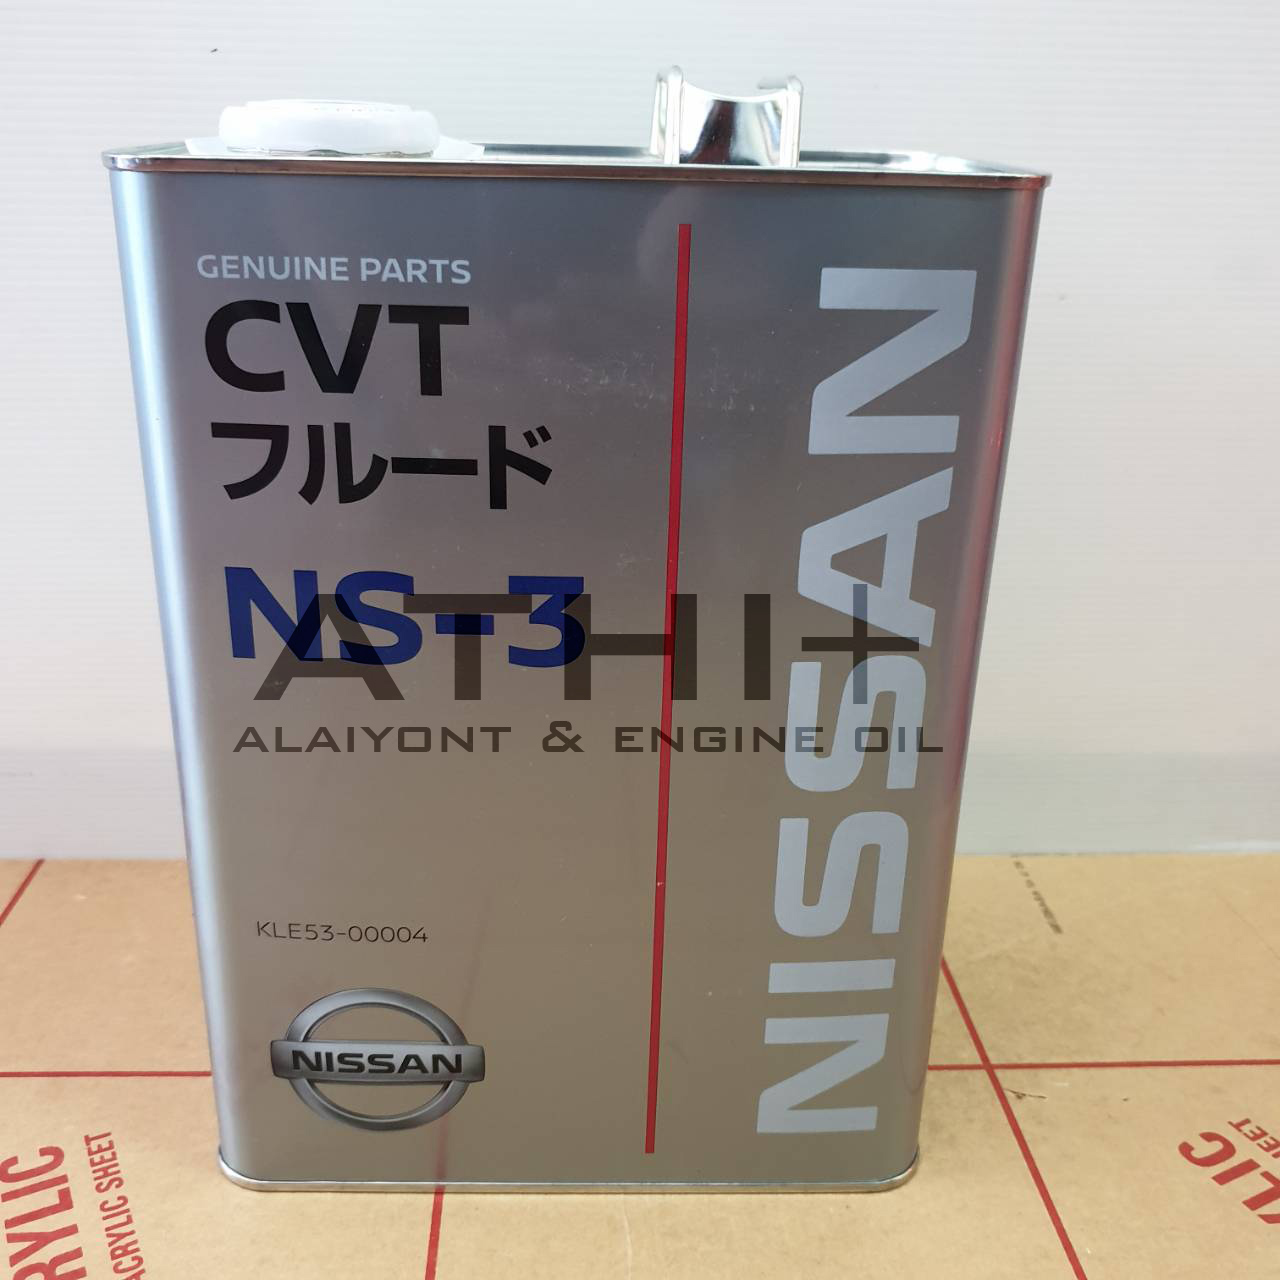 ส่งฟรี !! น้ำมันเกียร์ นิสสัน NISSAN CVT NS-3 / ขนาด 4 ลิตร สินค้าญี่ปุ่น